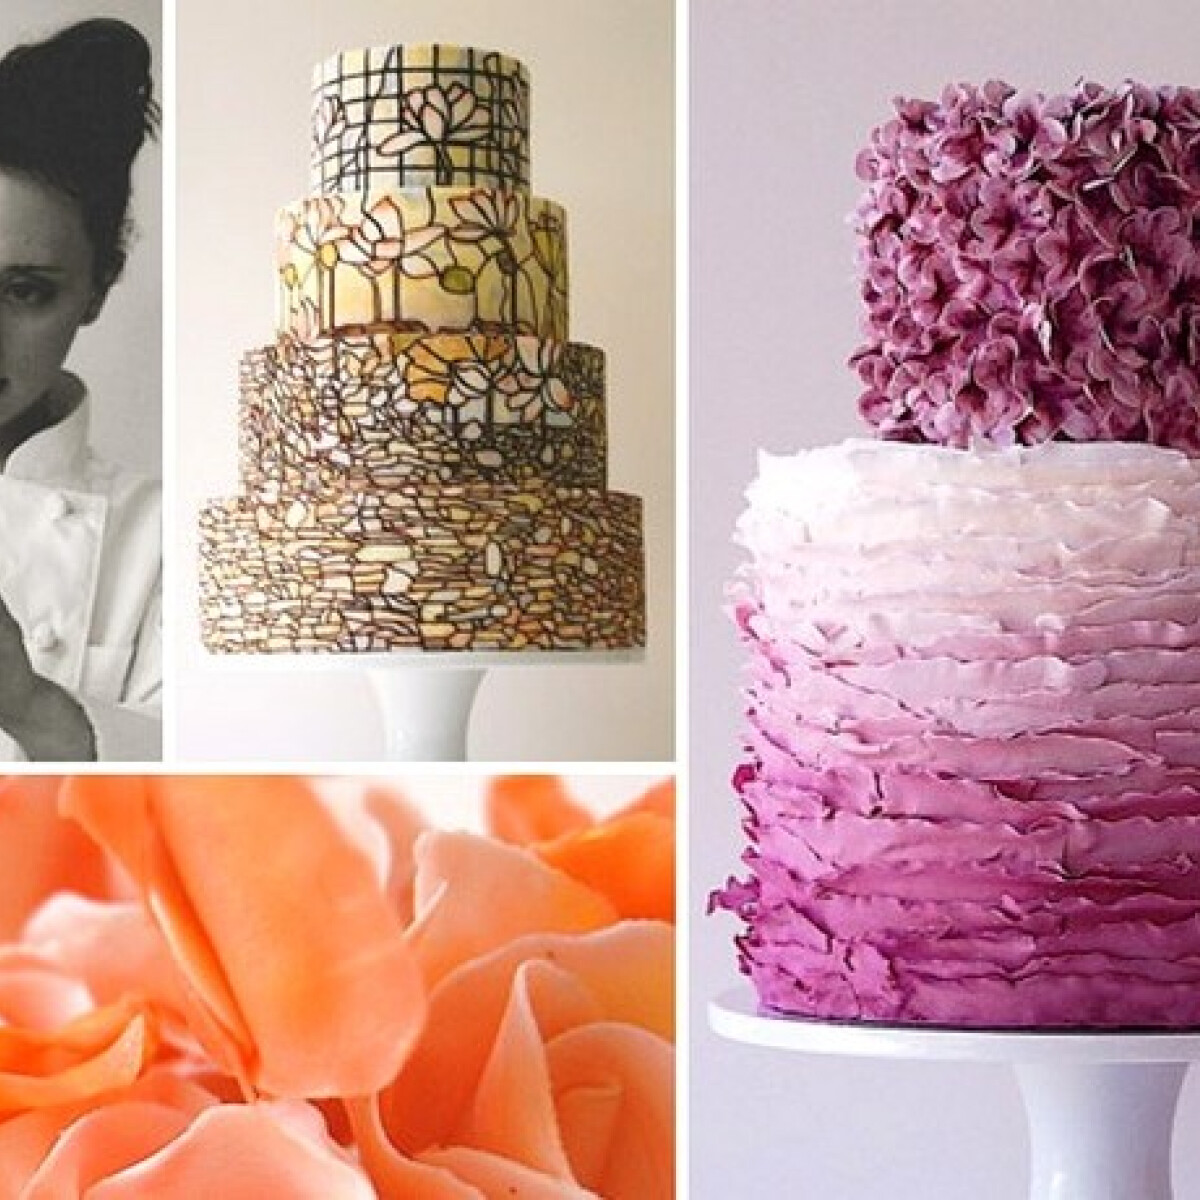 Az ex-balettos cukrászlány, aki még Obamáéknak is sütött - elképesztően gyönyörű tortái vannak!